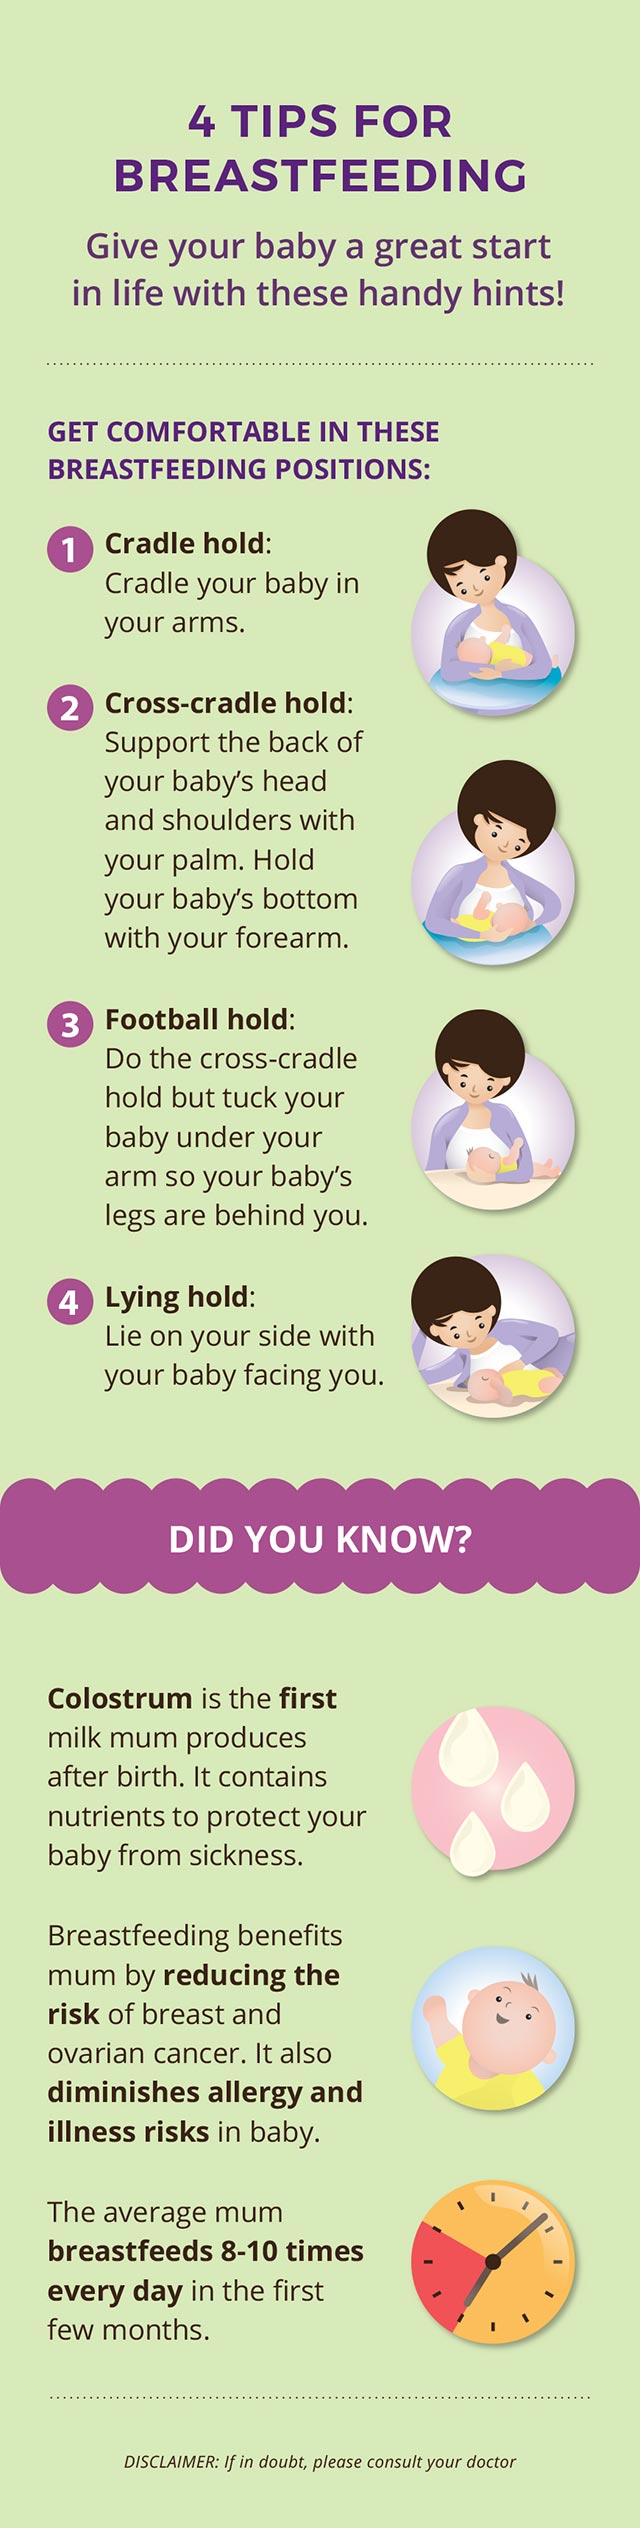 4 Tips for Brestfeeding